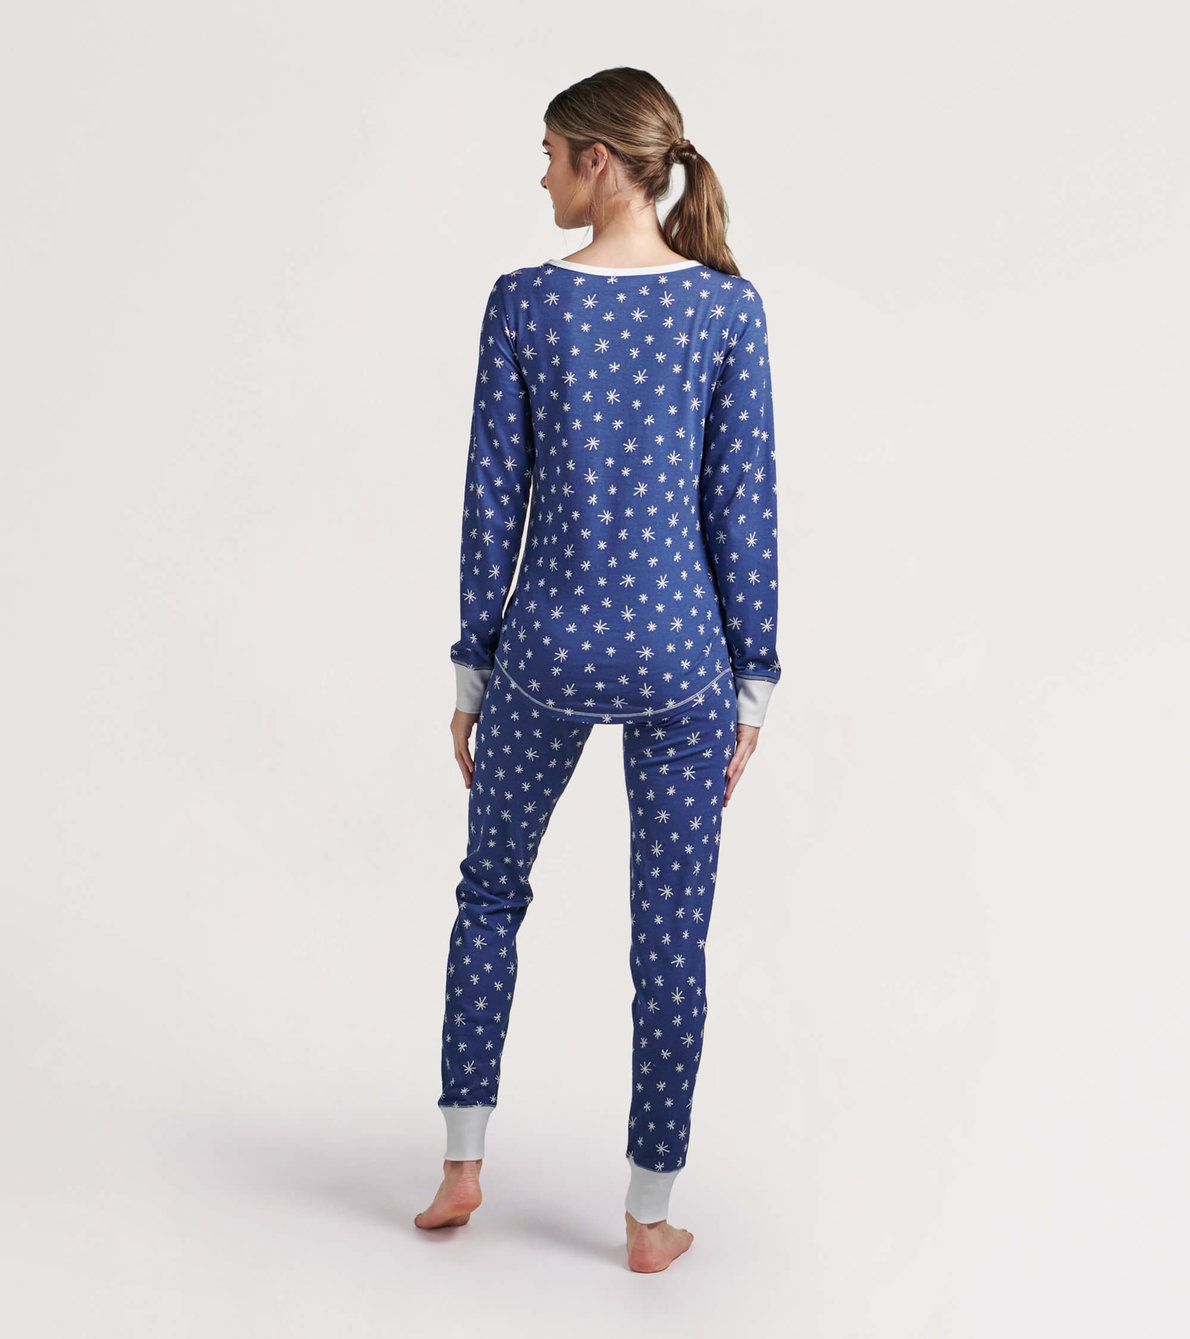 View larger image of Falling Snowflakes Women's Jersey Pajama Set